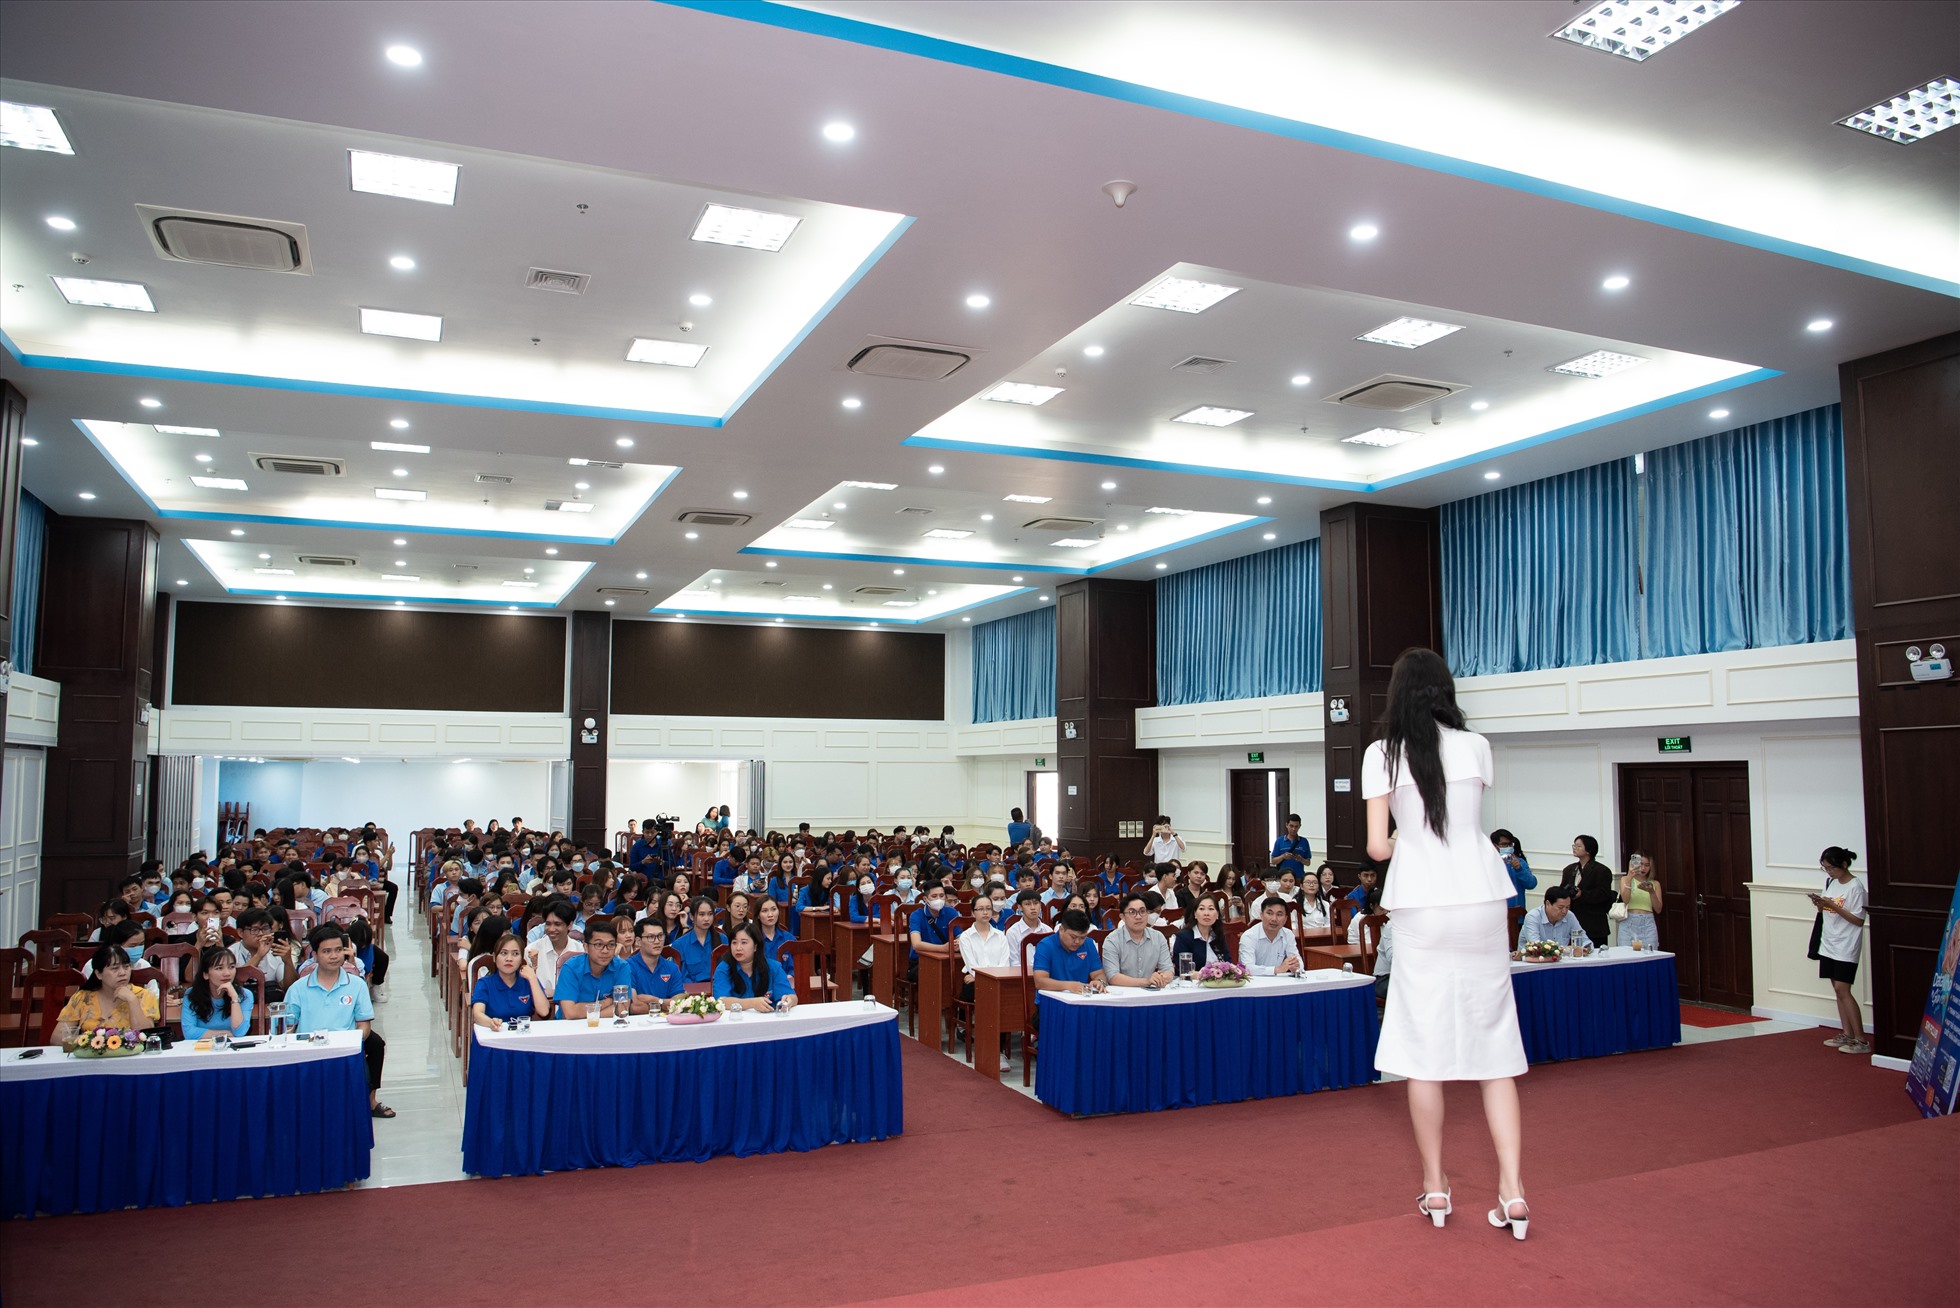 Sự góp mặt của Hoa hậu Bảo Ngọc với vai trò là Đại sứ của tổ chức Hoa hậu Quốc gia Việt Nam đã nhận được sự tiếp nhiệt tình của đại diện tỉnh Đoàn, các bạn Đoàn viên thanh niên. Ảnh: Nhân vật cung cấp.